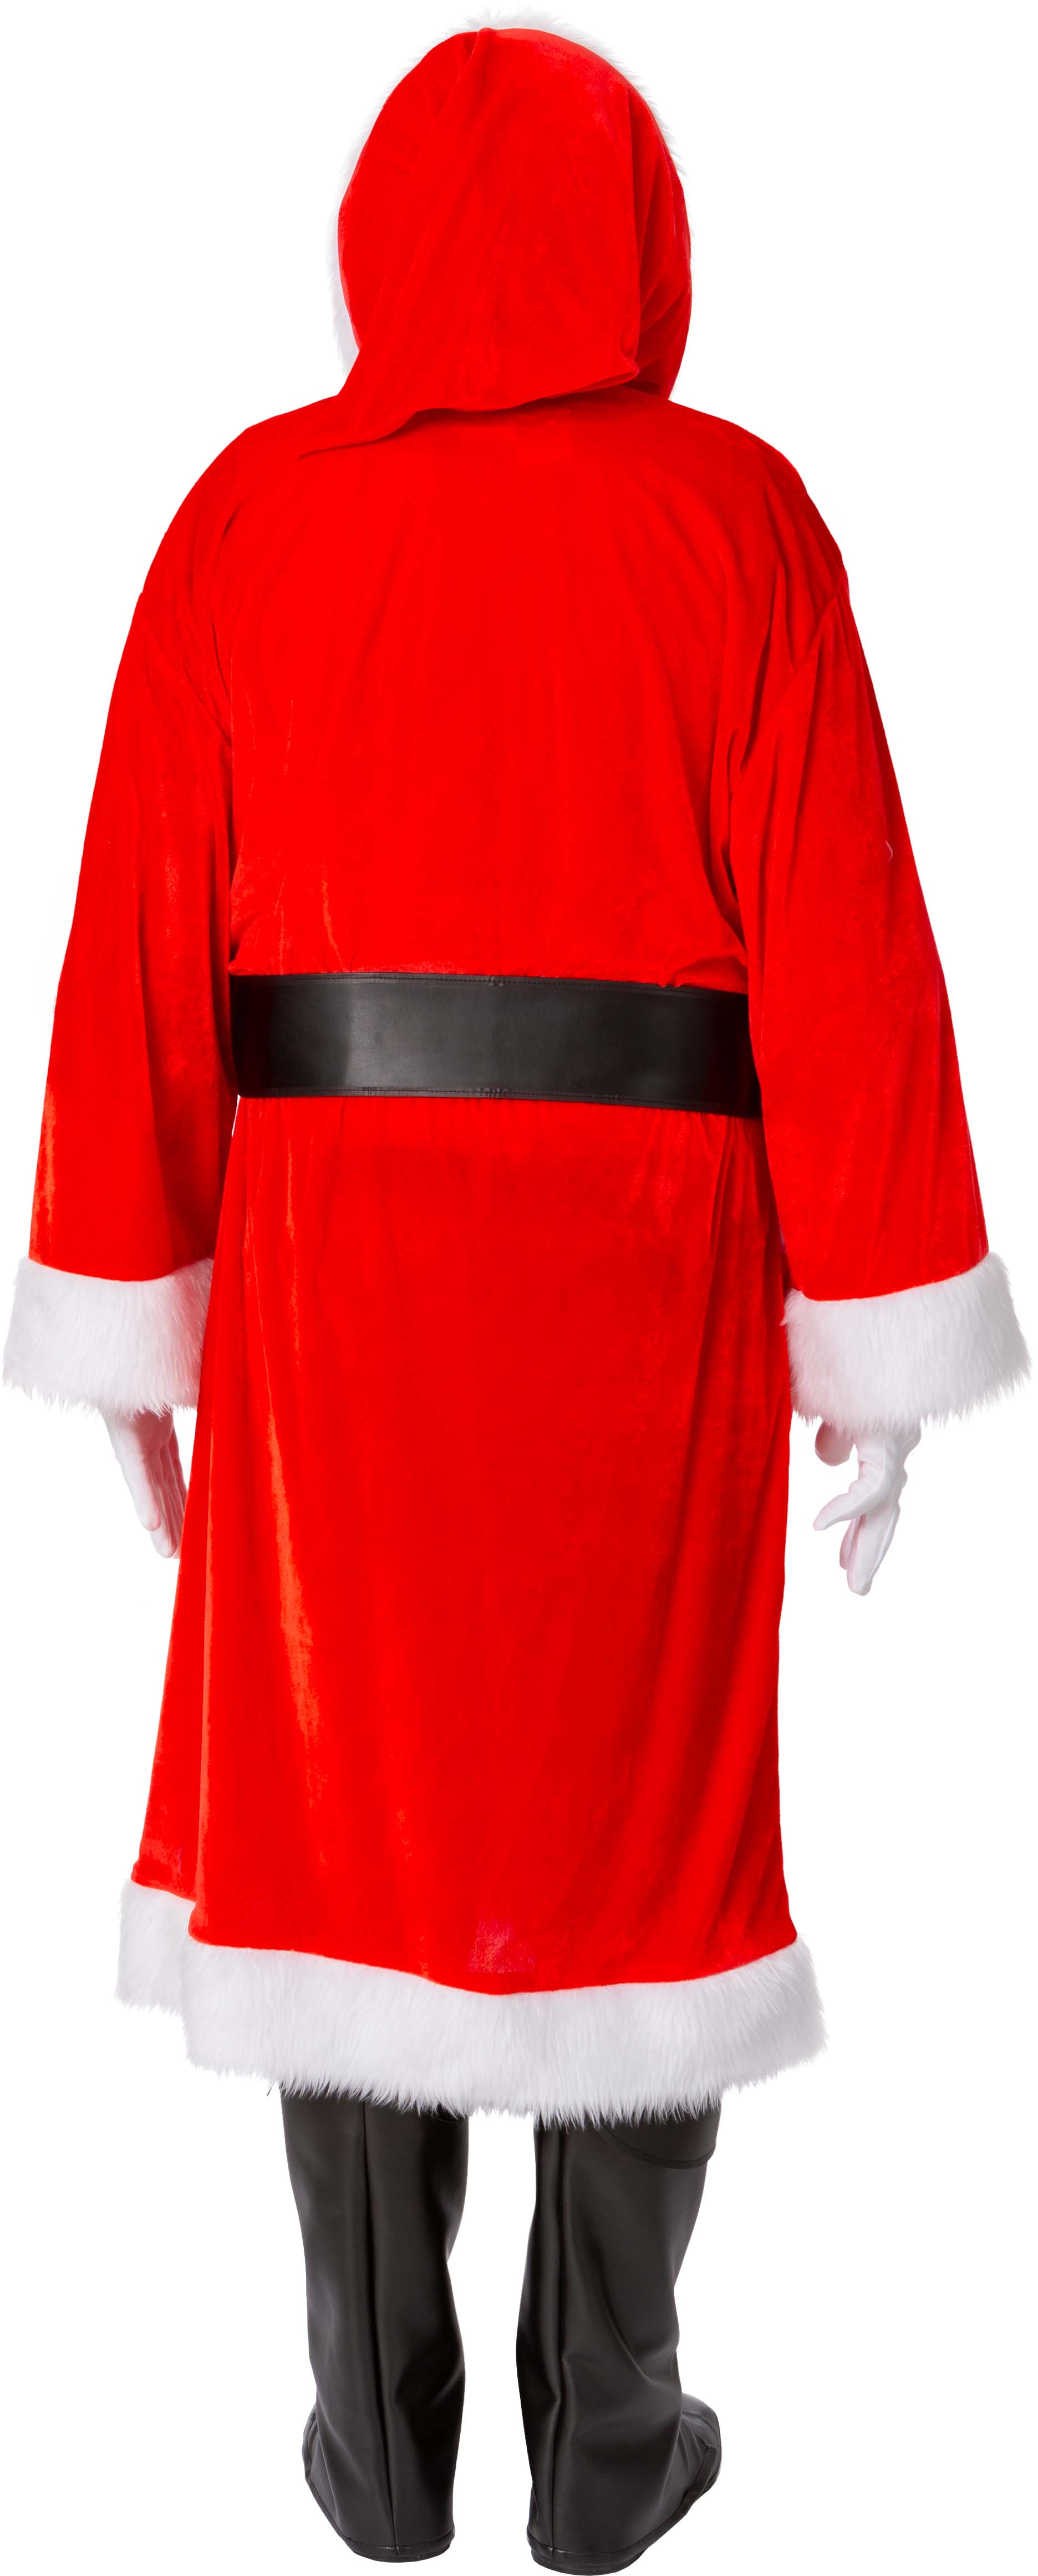 Santa coat, red